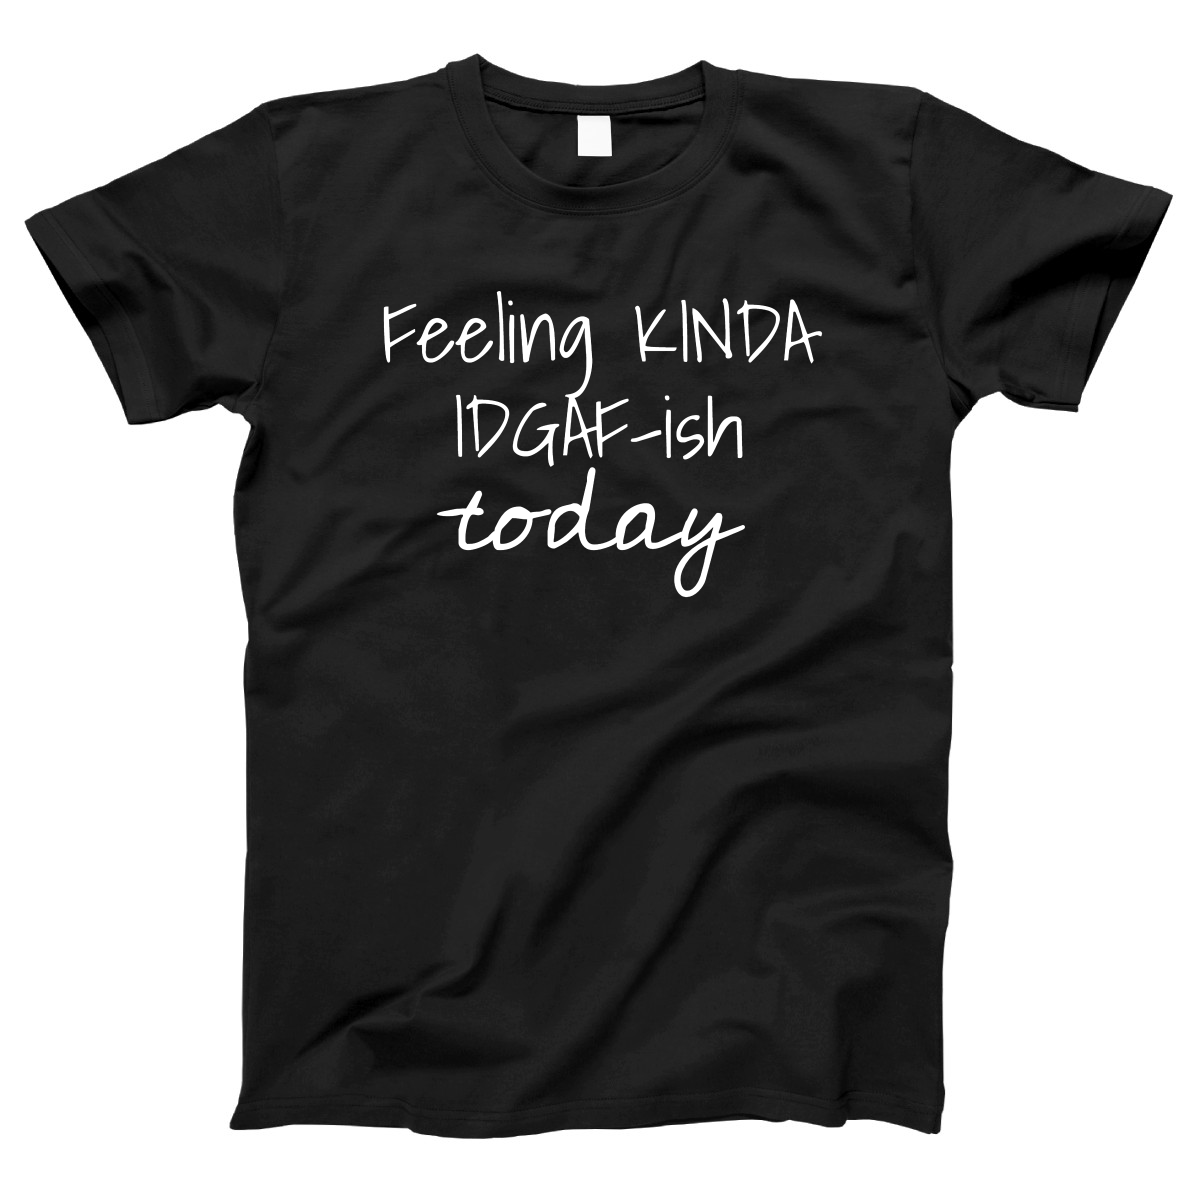 Feeling Kinda IDGAF-ish Today Women's T-shirt | Black